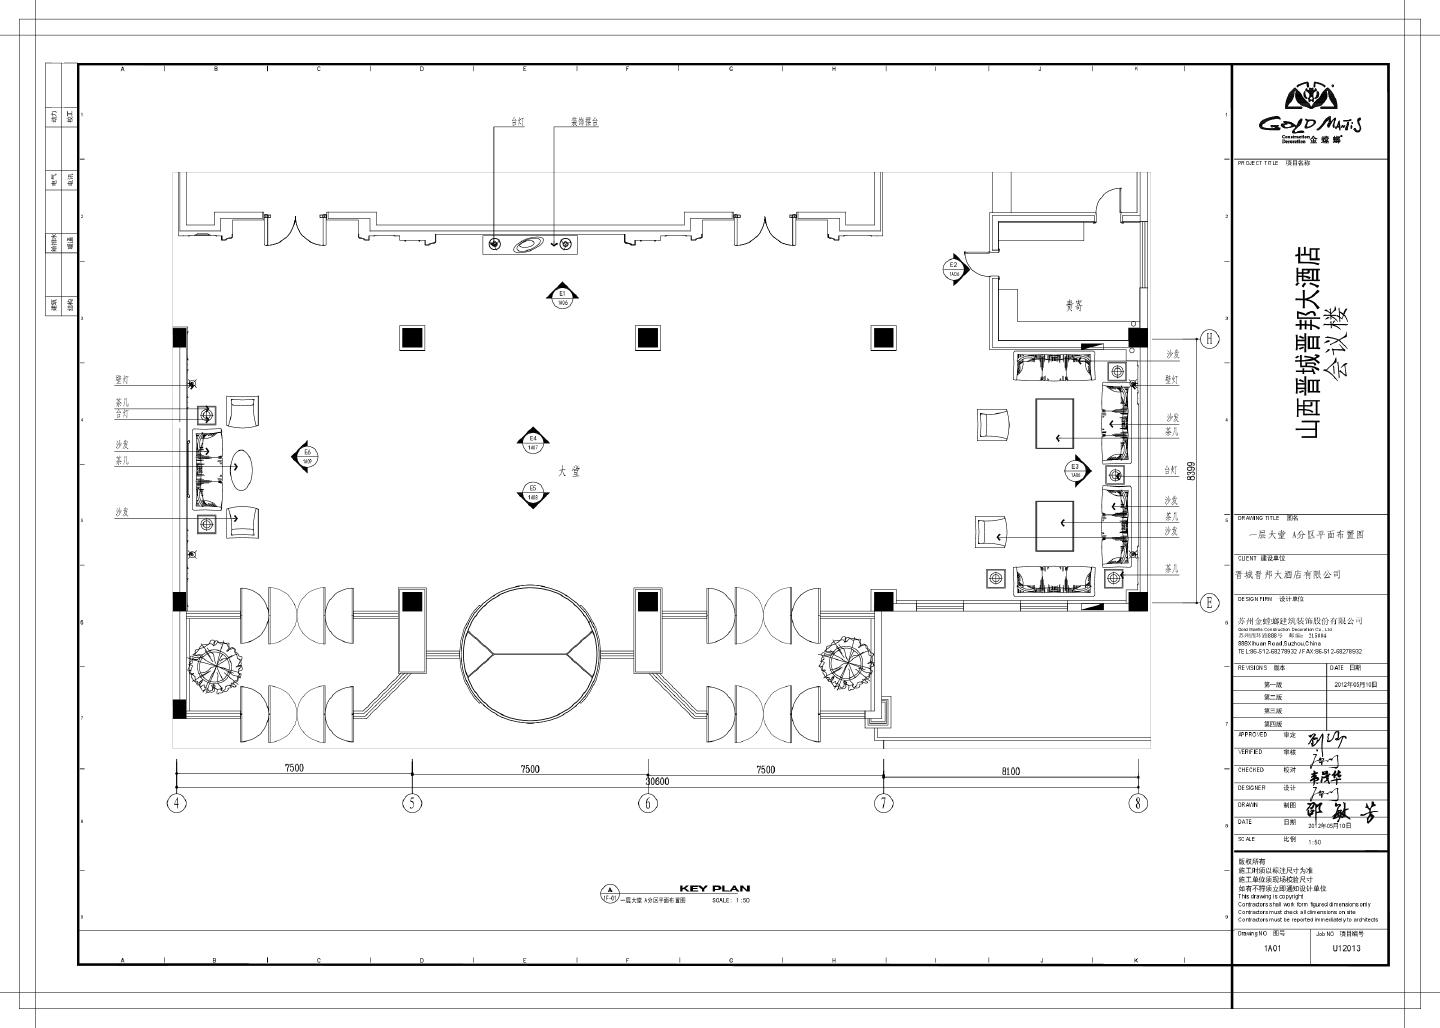 山西晋城晋邦大酒店会议楼-一层大堂A分区装饰设计CAD图